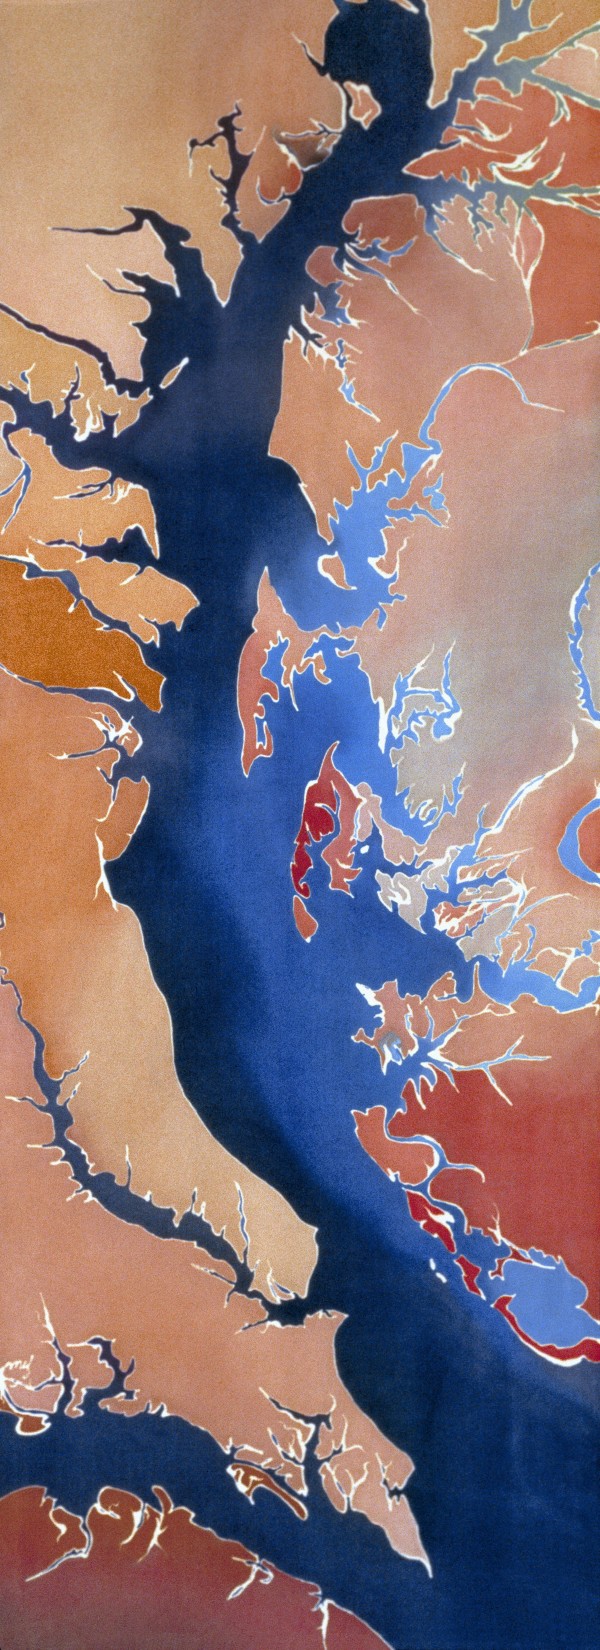 The Chesapeake Bay (VA) by Mary Edna Fraser